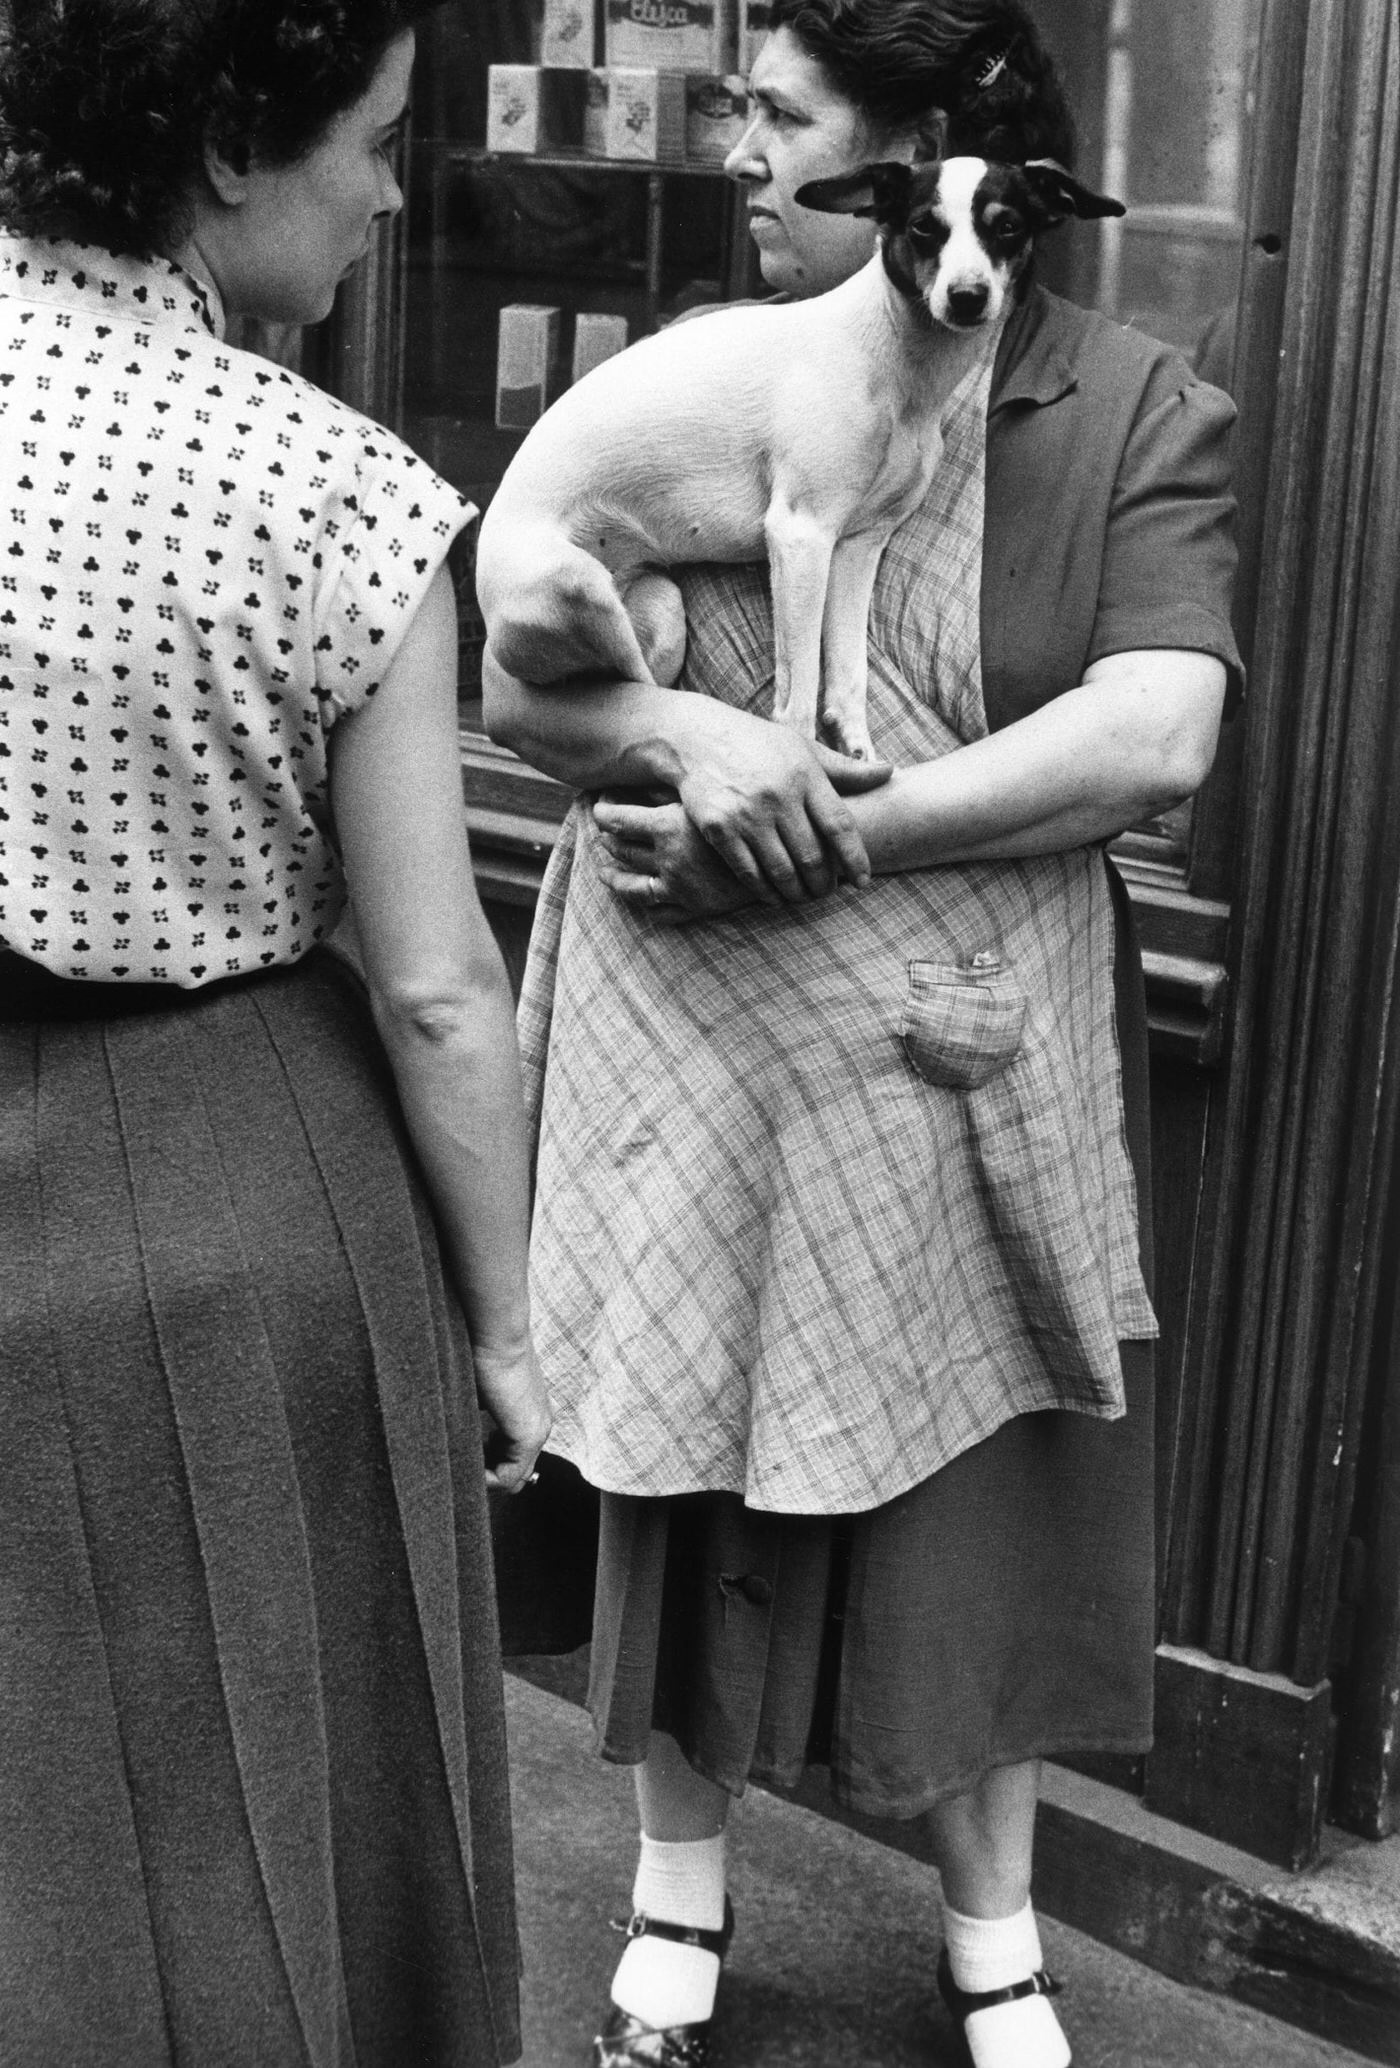 Paris, France, 1952